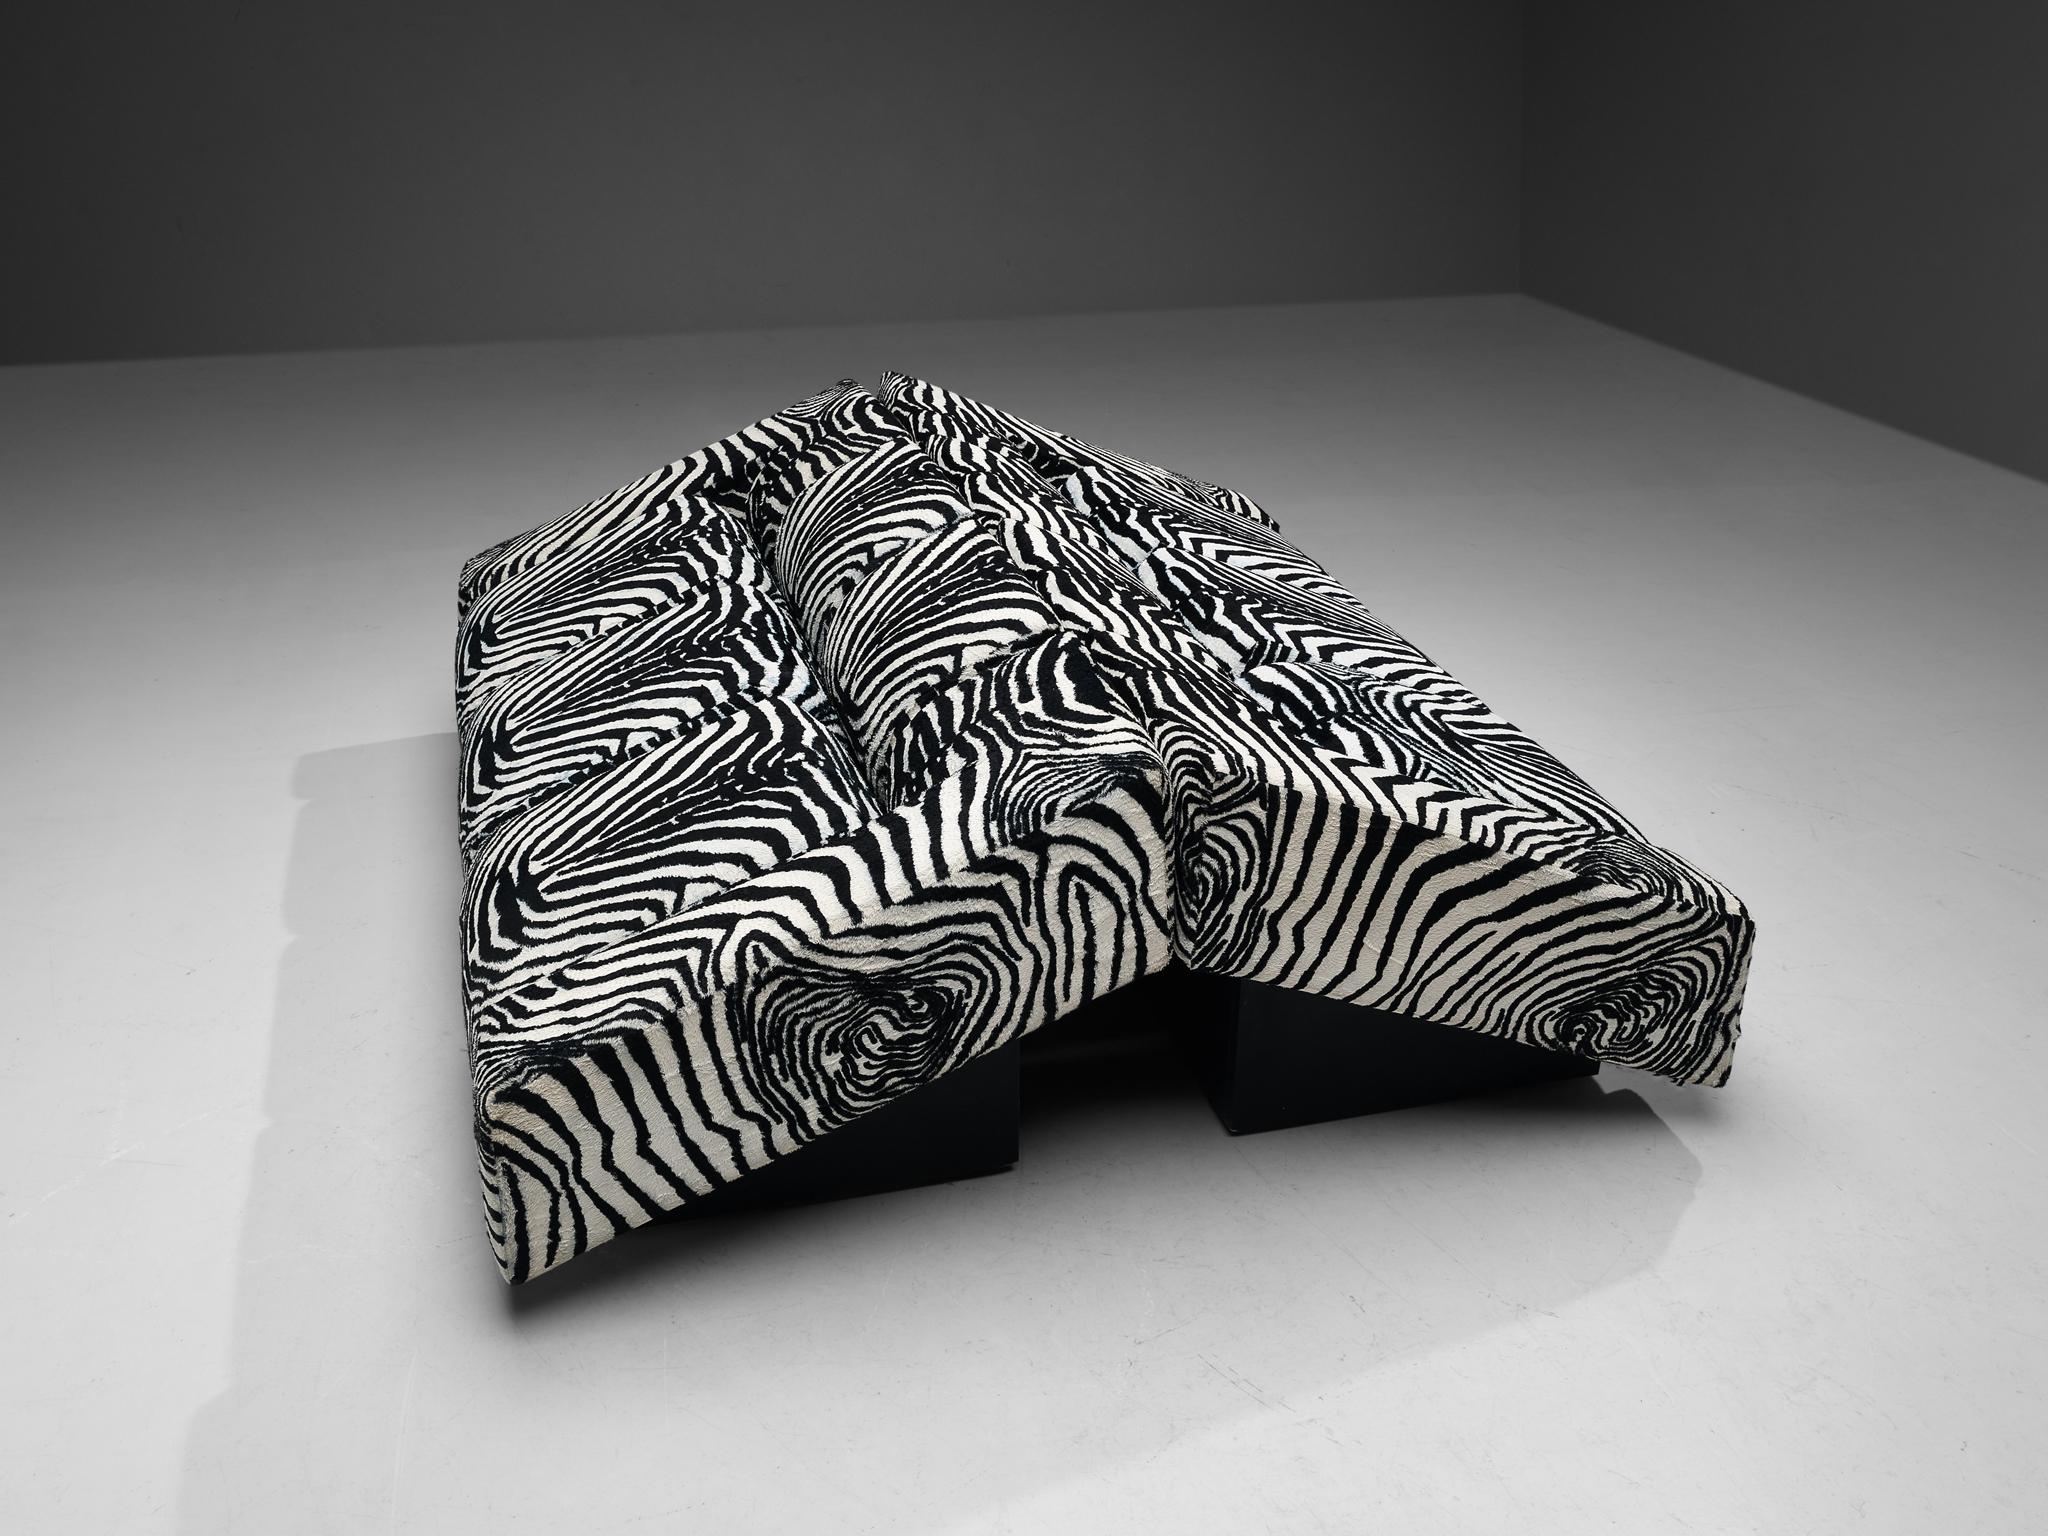 Mario Botta for Alias Pair of 'Obliqua' Sofas in Zebra Print Upholstery  For Sale 1